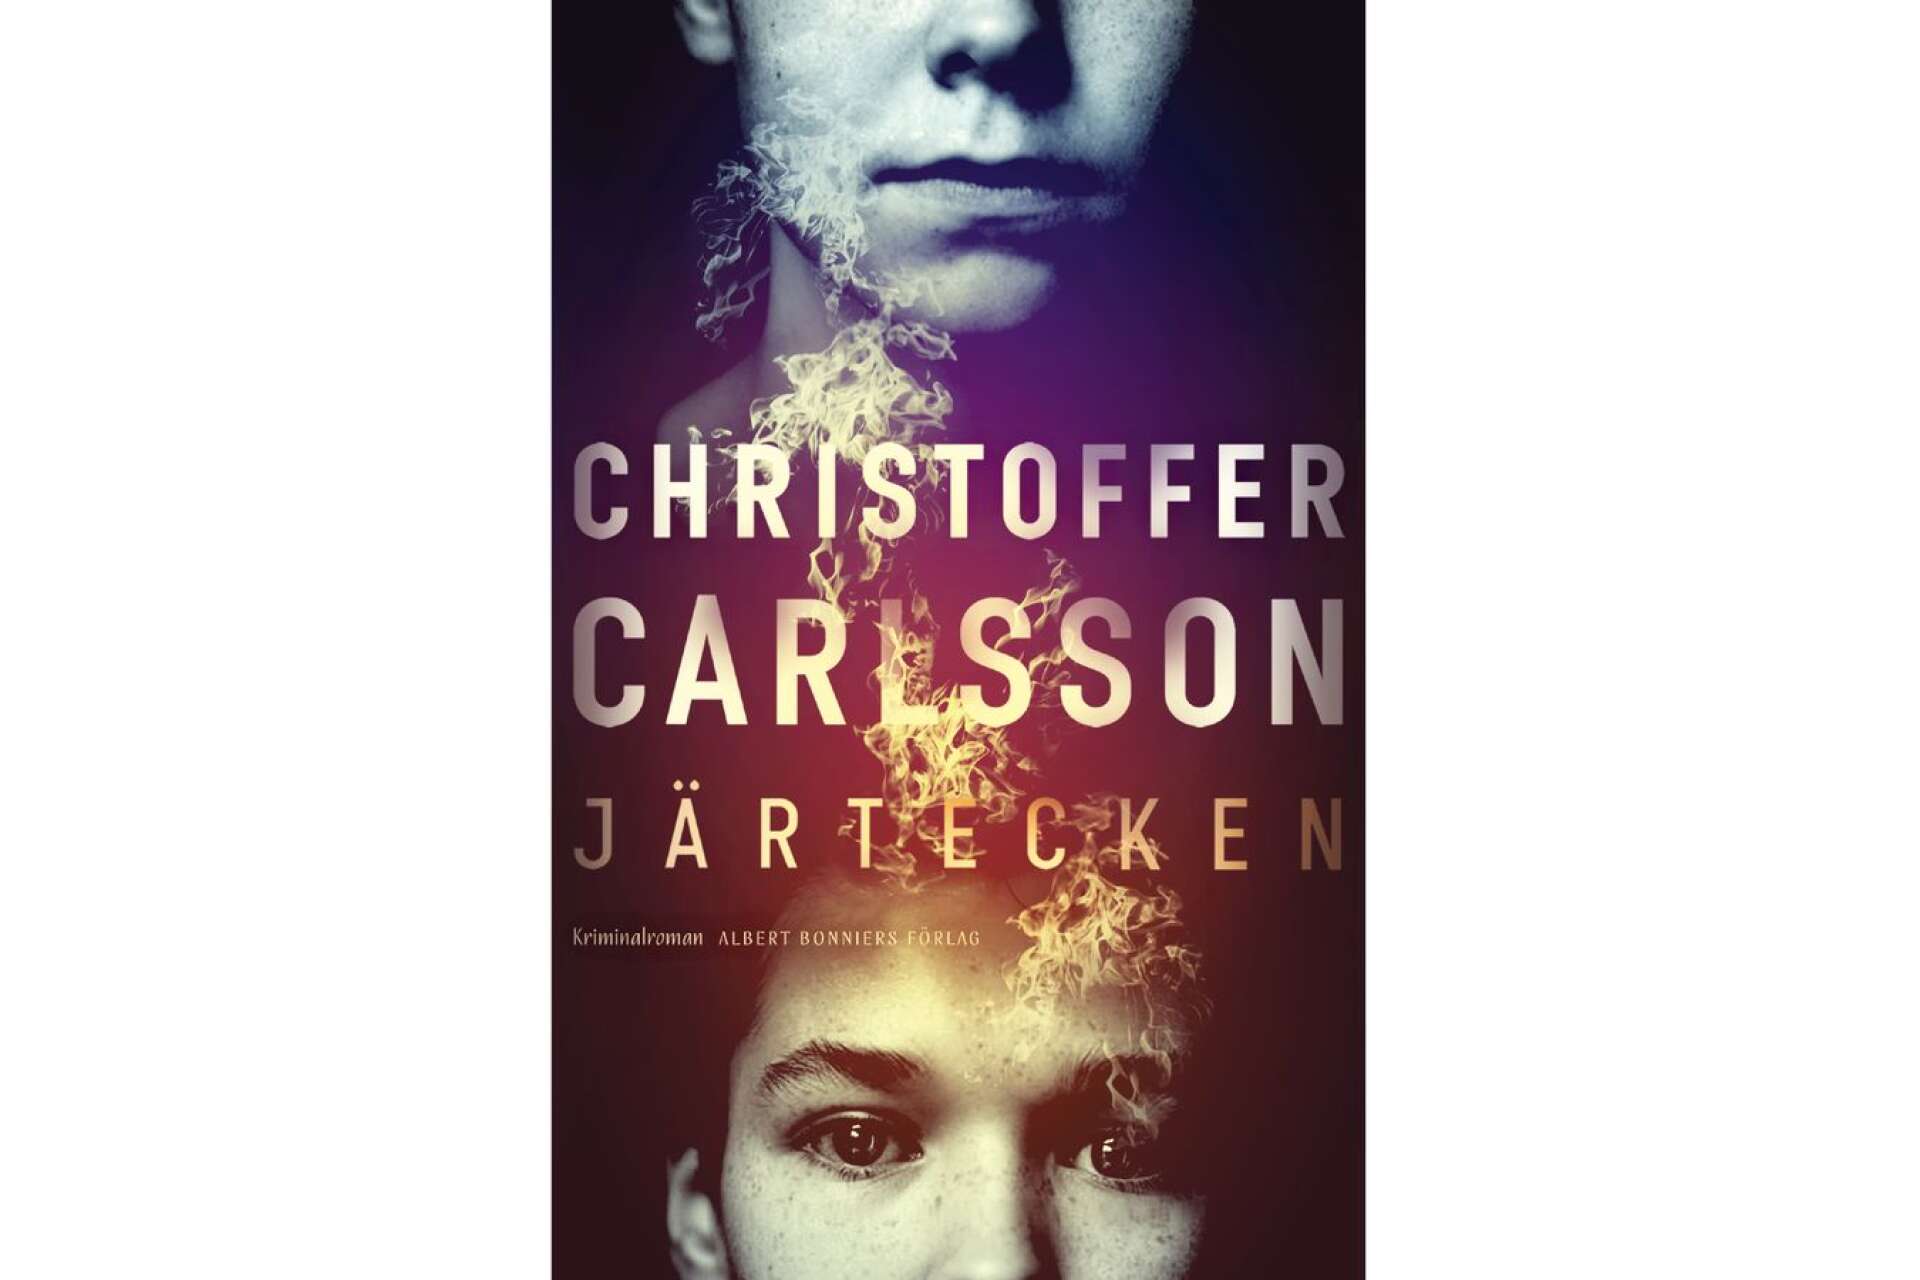 Titel: Järtecken Författare: Christoffer Carlsson Förlag: Alberg Bonnier